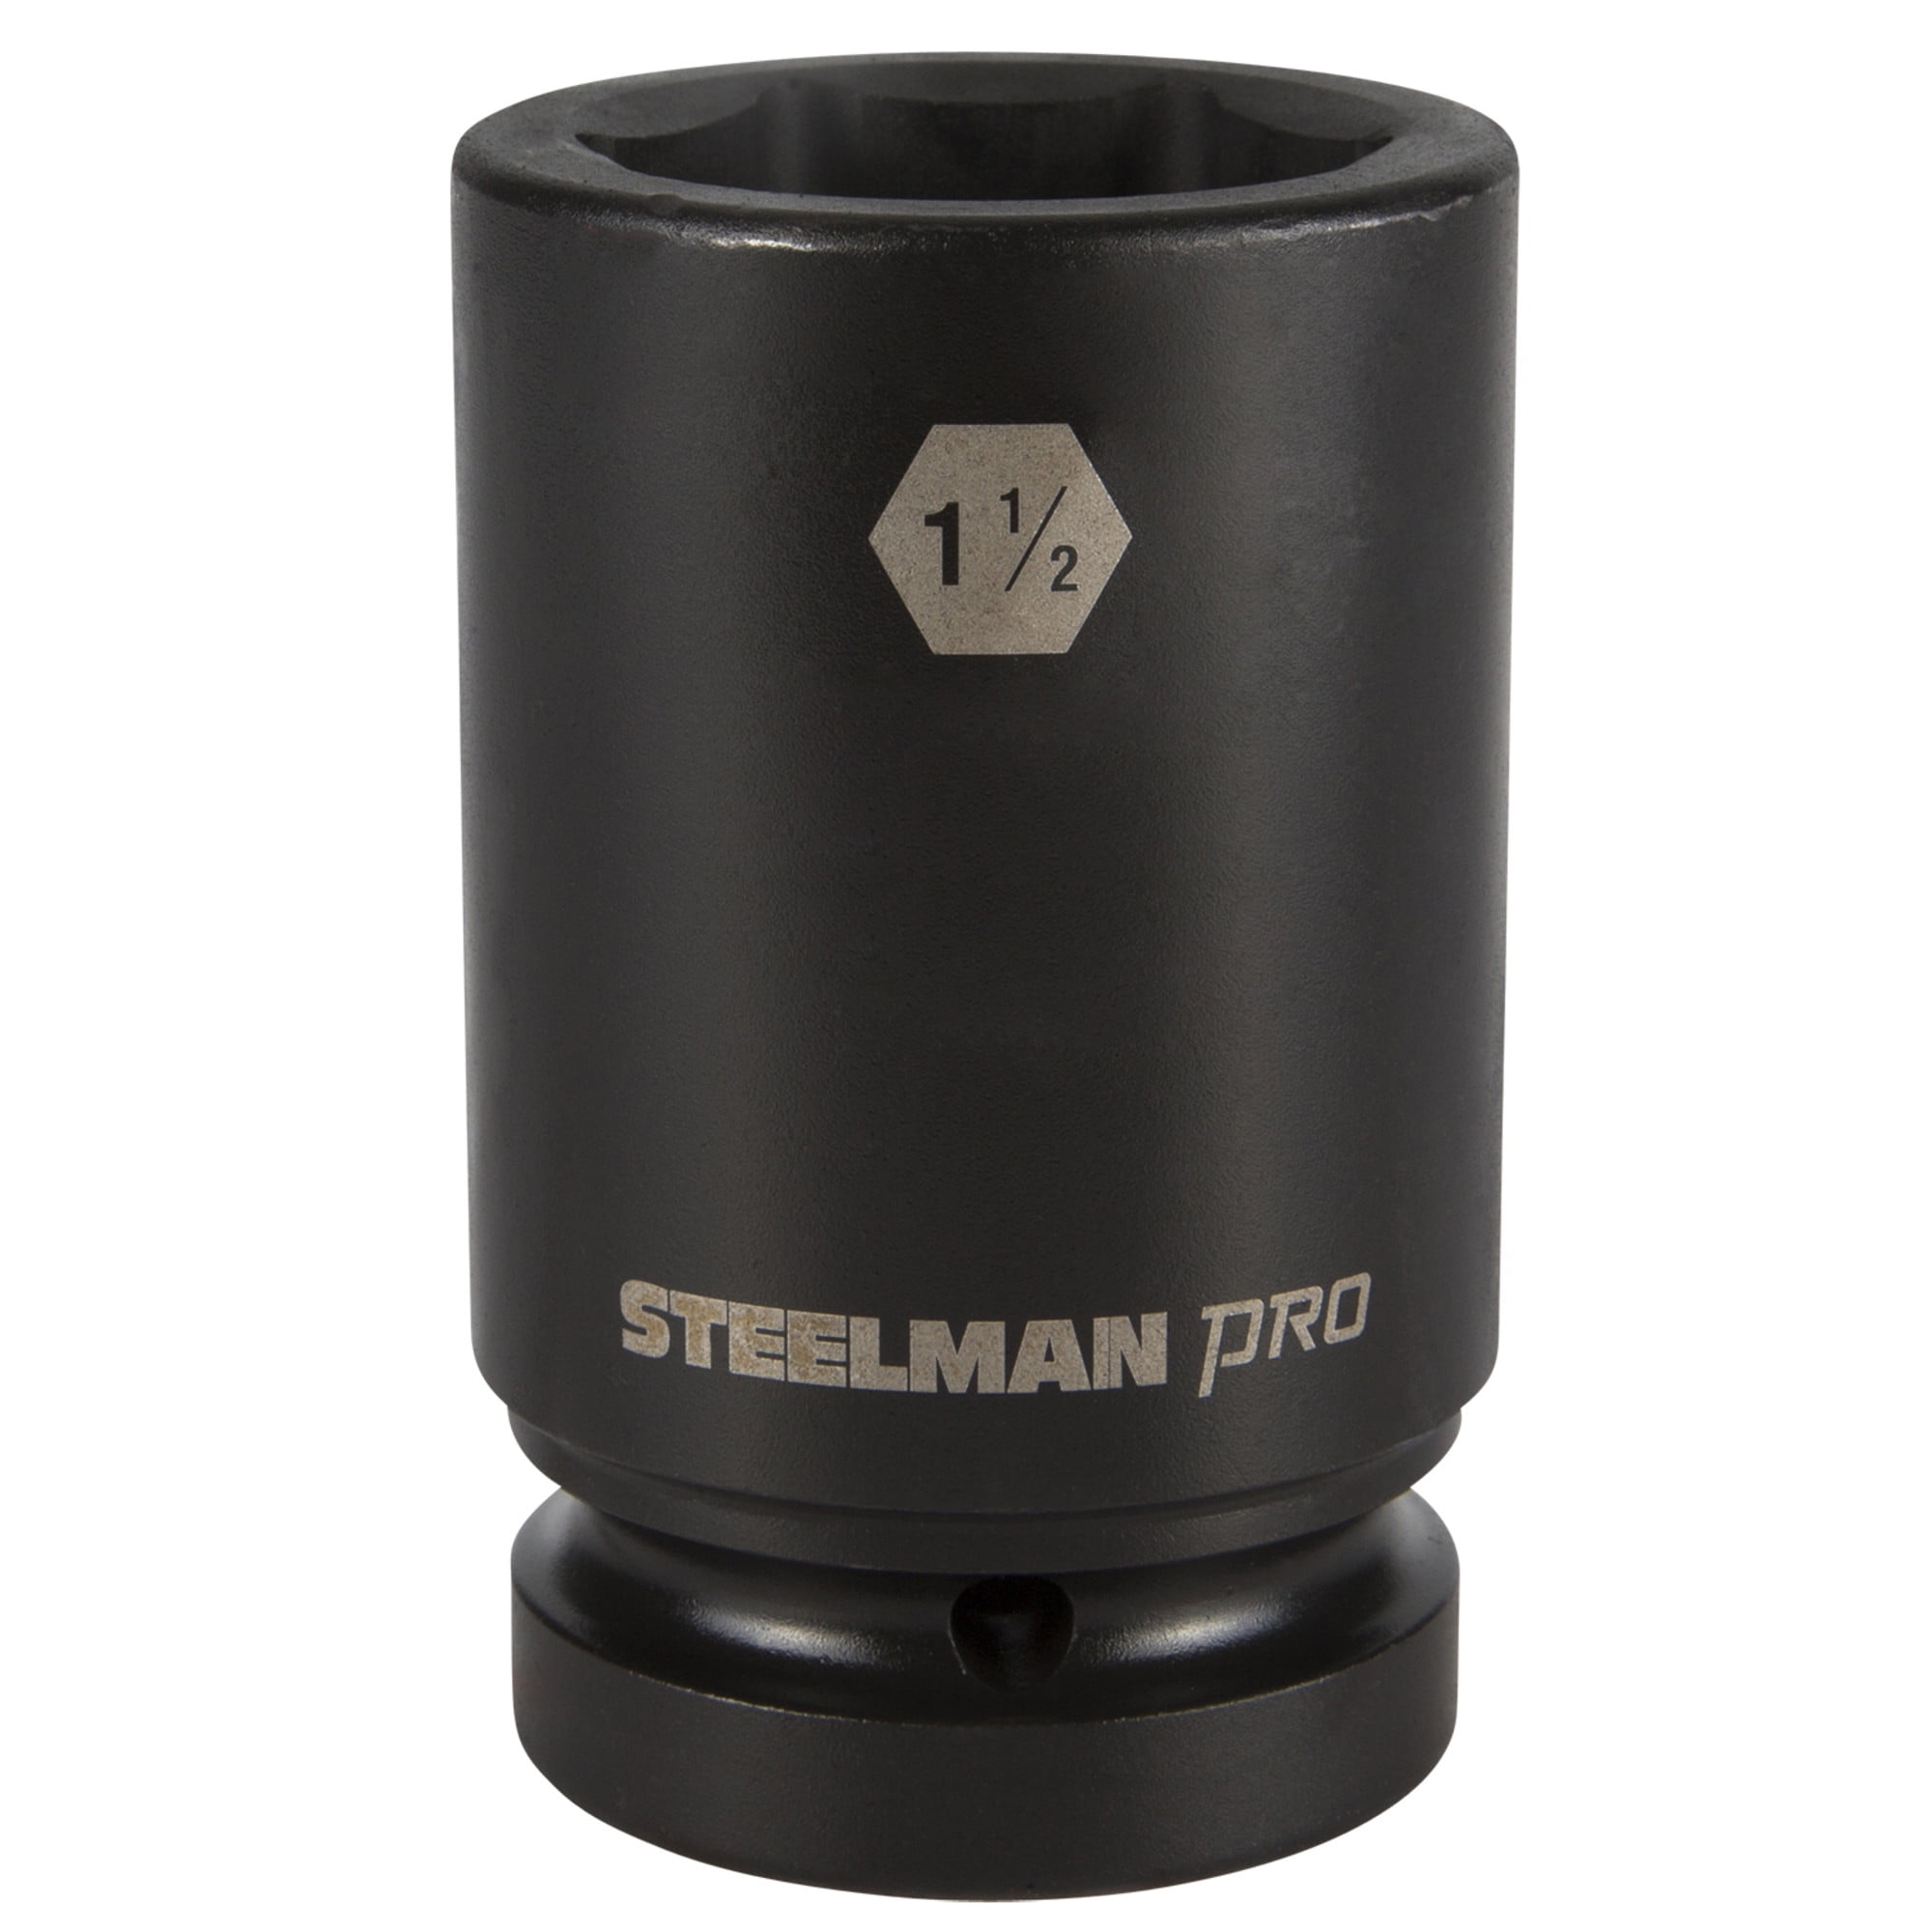 Drive 1-1/2 in Steelman Pro 1 in 6 Point Deep Impact Socket 79335